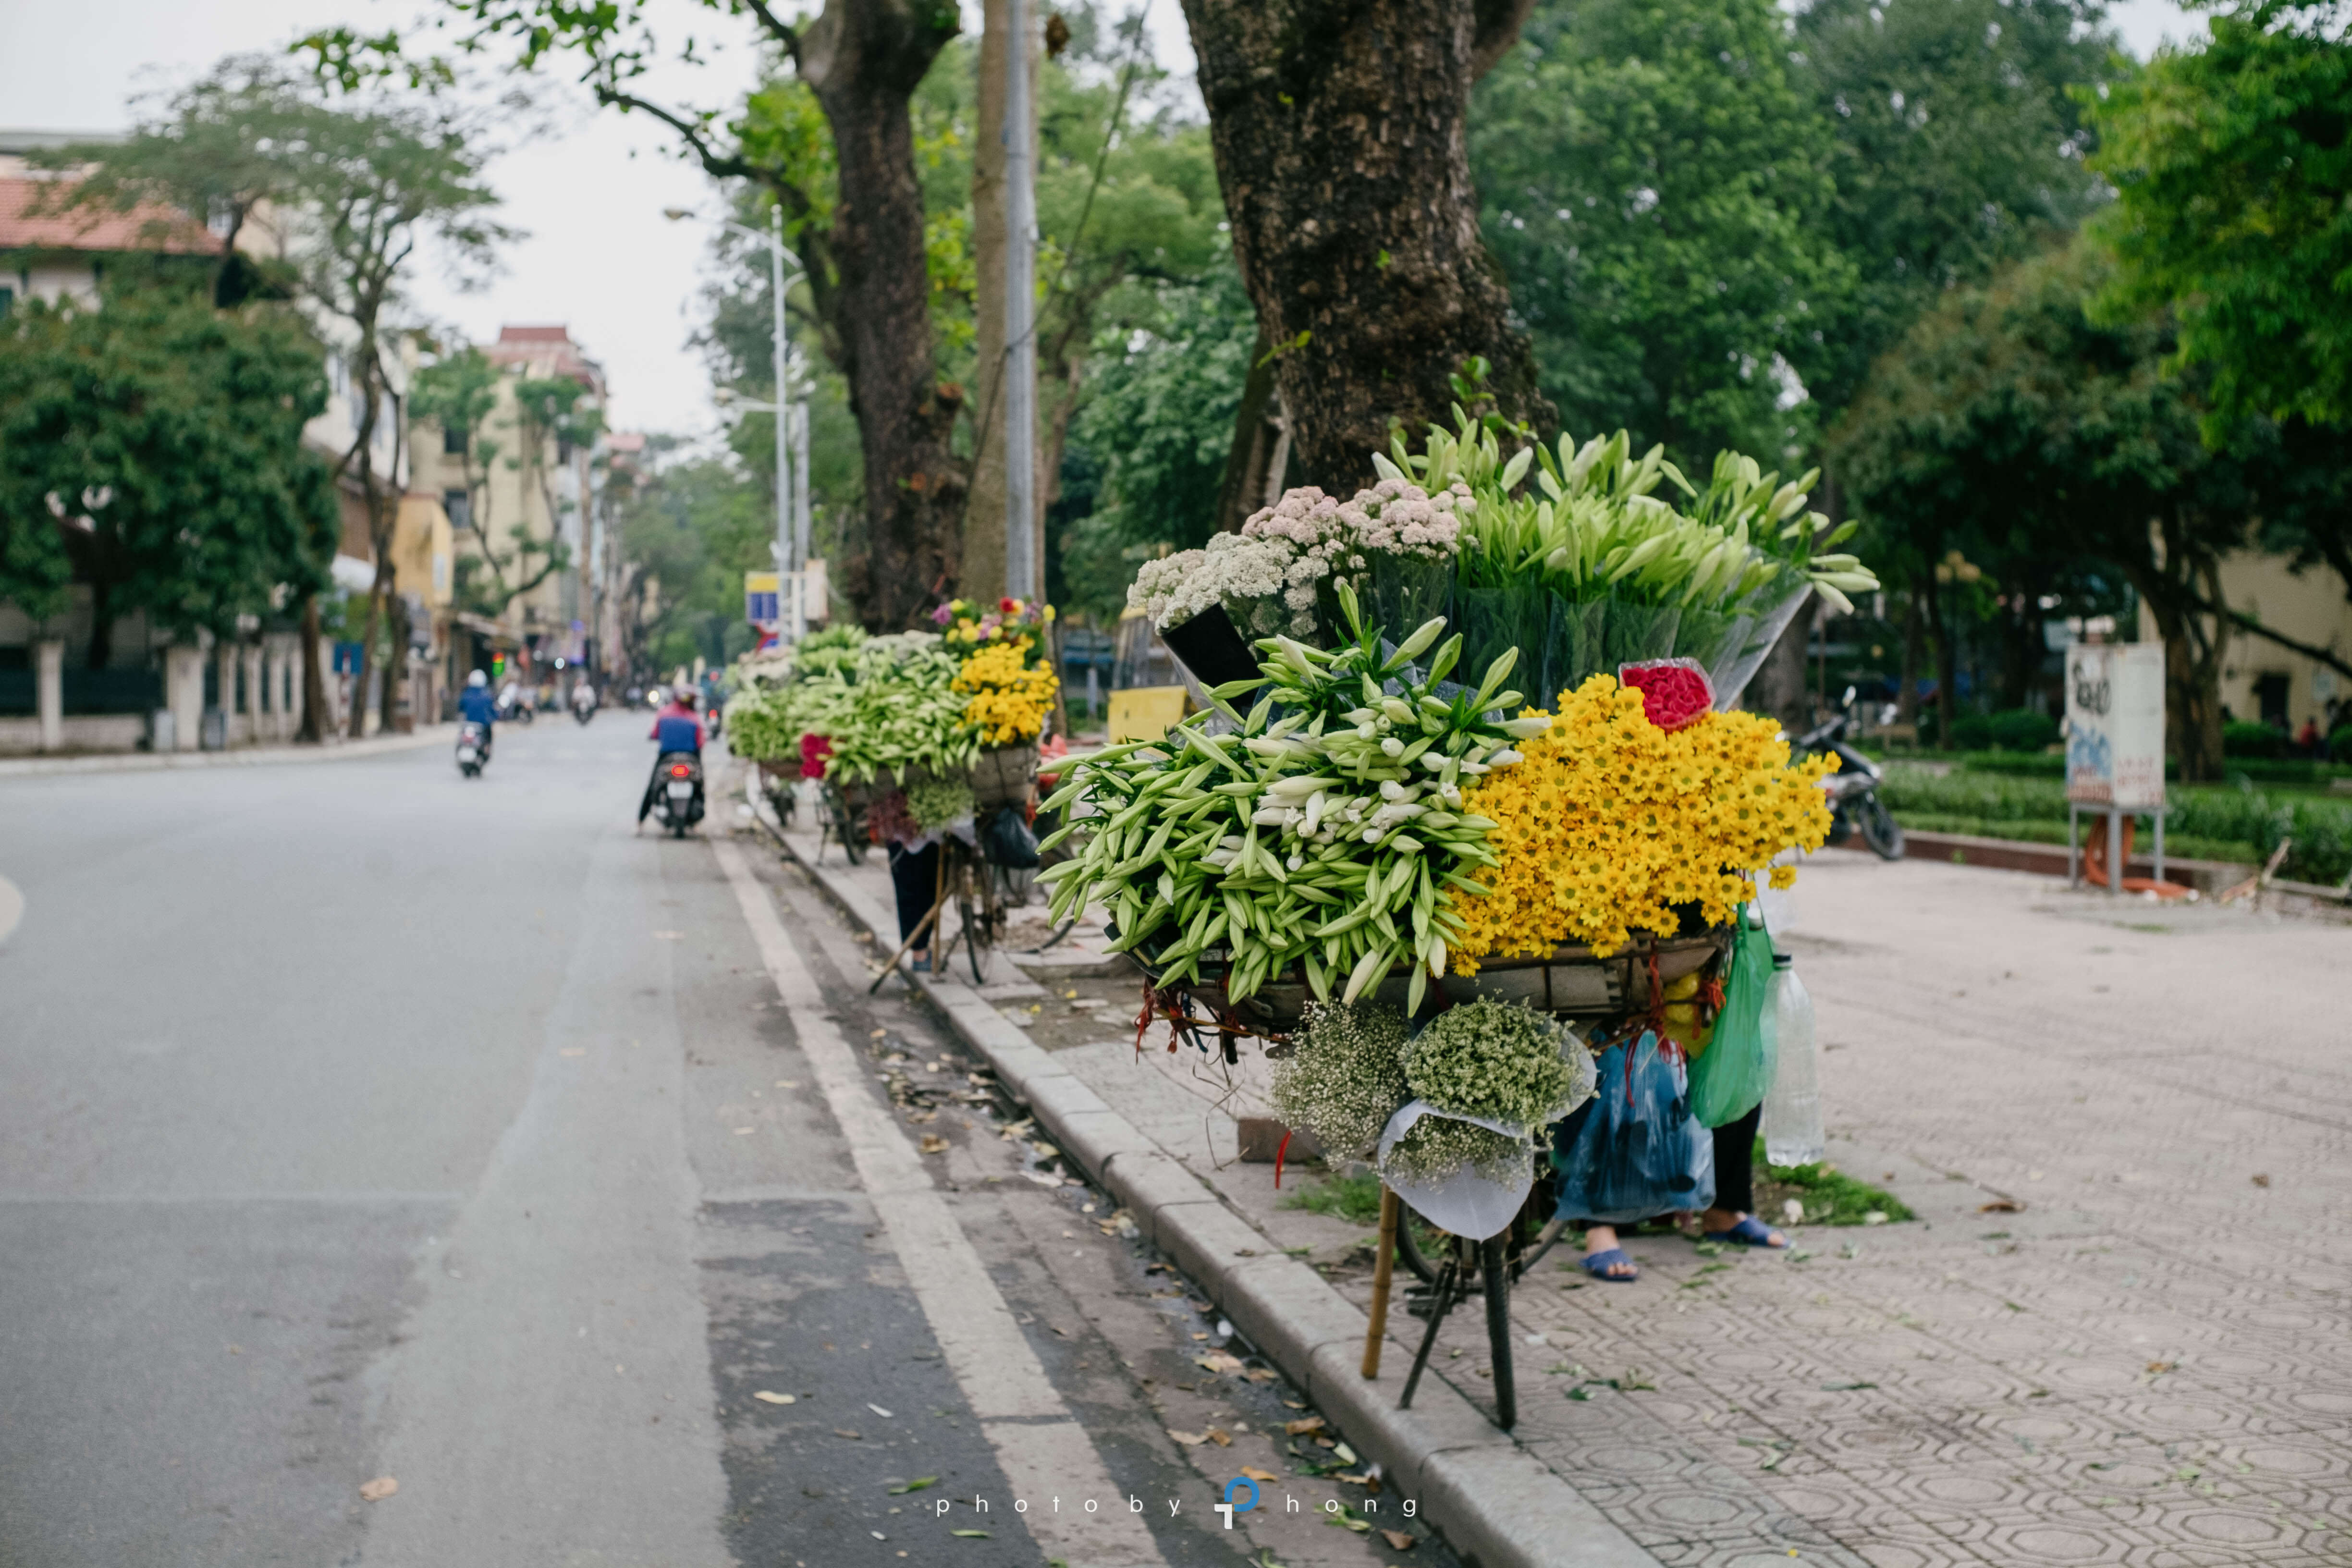 Hoa loa kèn trên phố